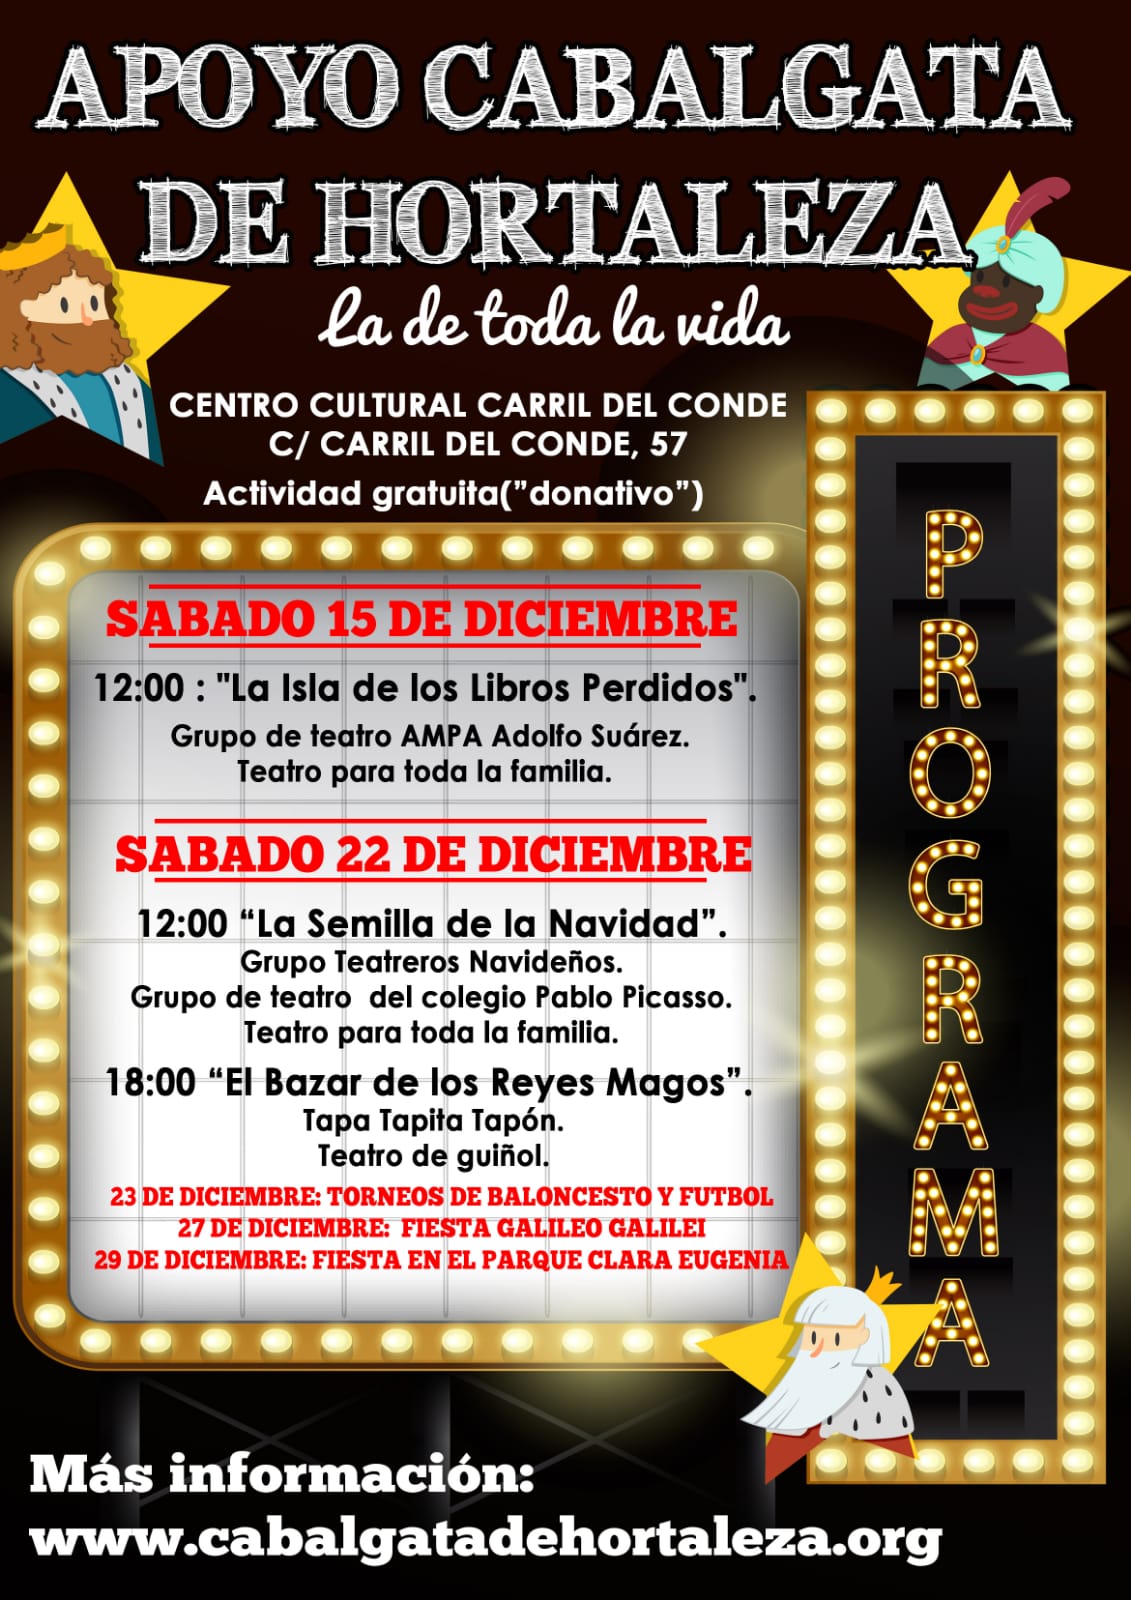 Teatro en Apoyo de la Cabalgata de Hortaleza en el Centro Cultural Carril del Conde